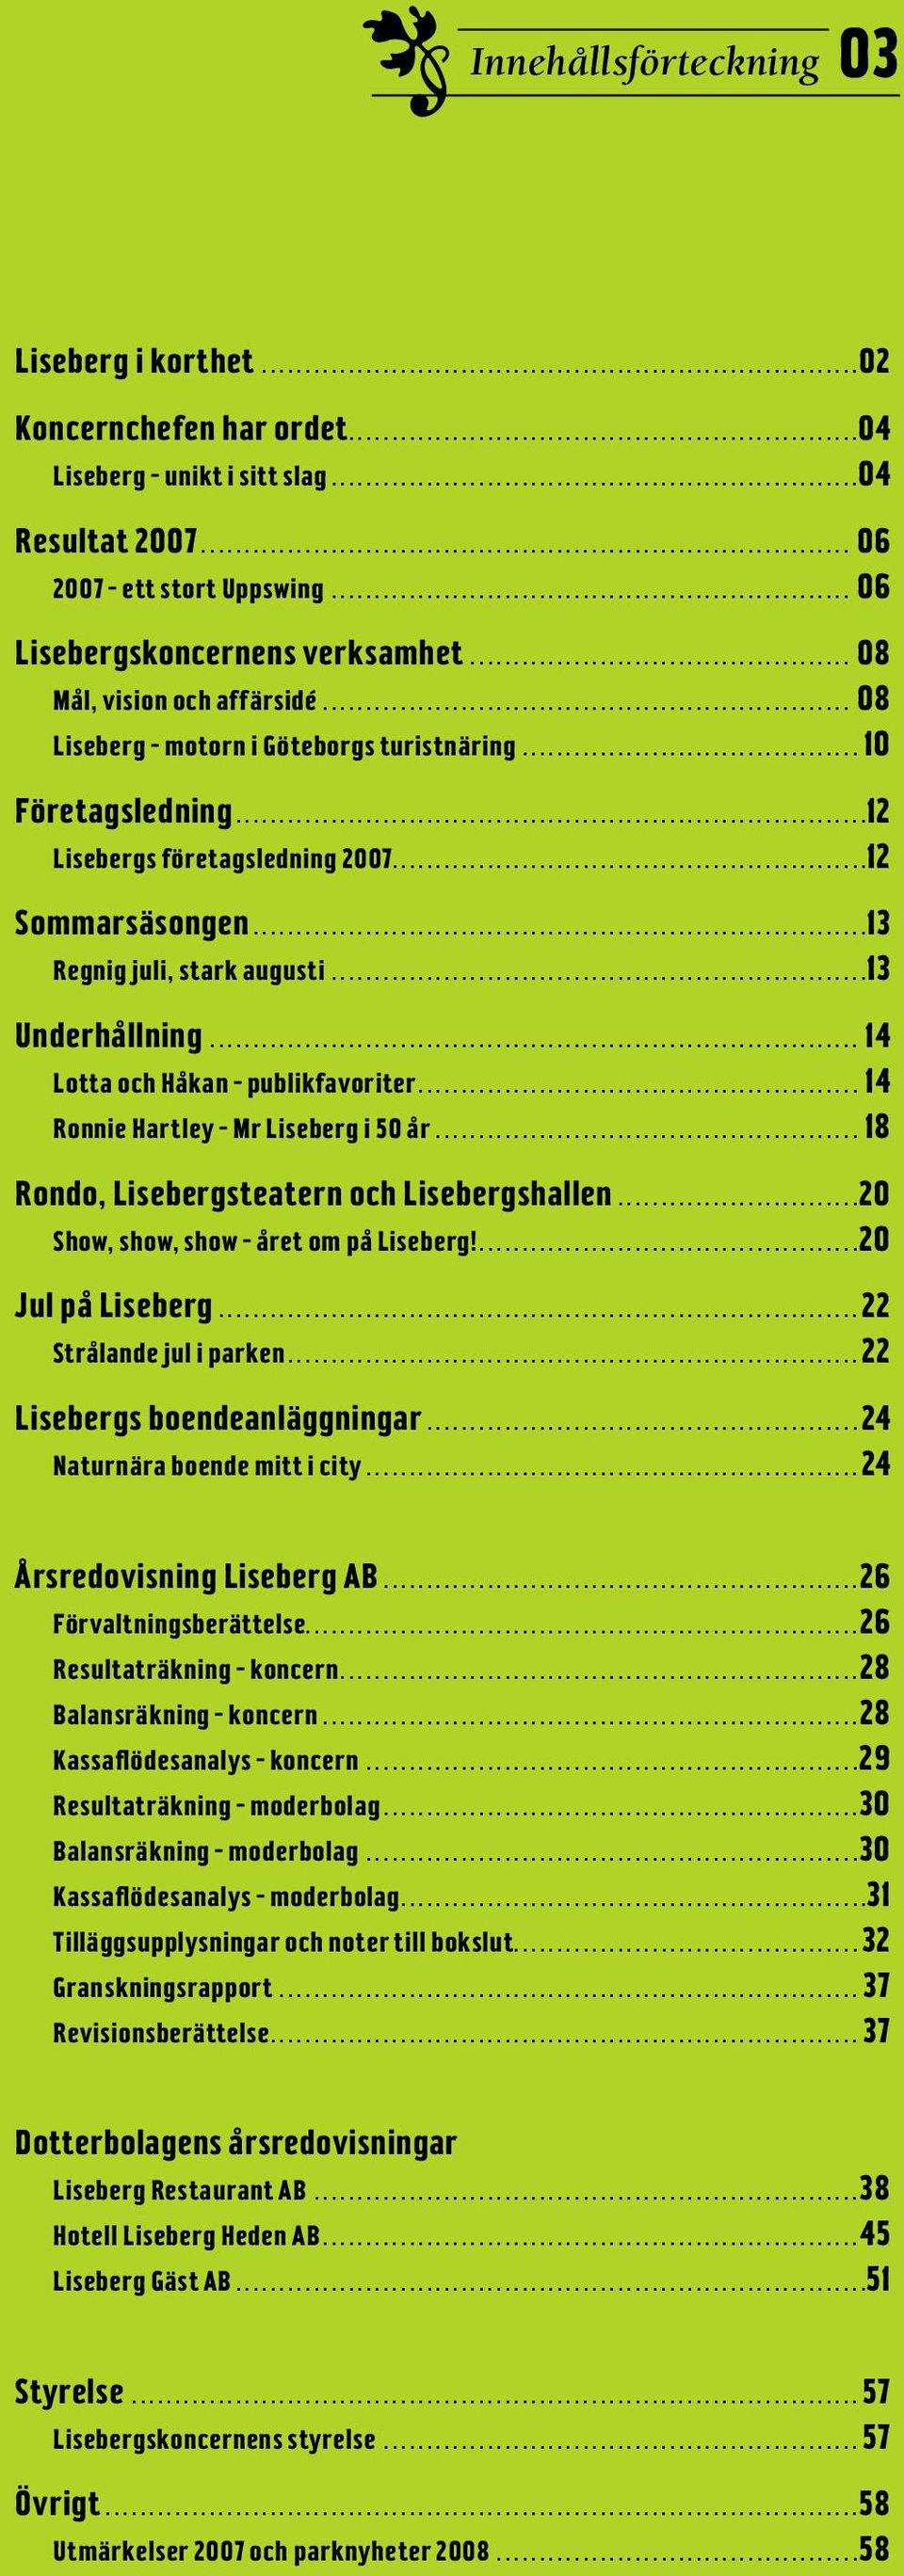 ..13 Underhållning...14 Lotta och Håkan publikfavoriter...14 Ronnie Hartley Mr Liseberg i 50 år...18 Rondo, Lisebergsteatern och Lisebergshallen...20 Show, show, show året om på Liseberg!